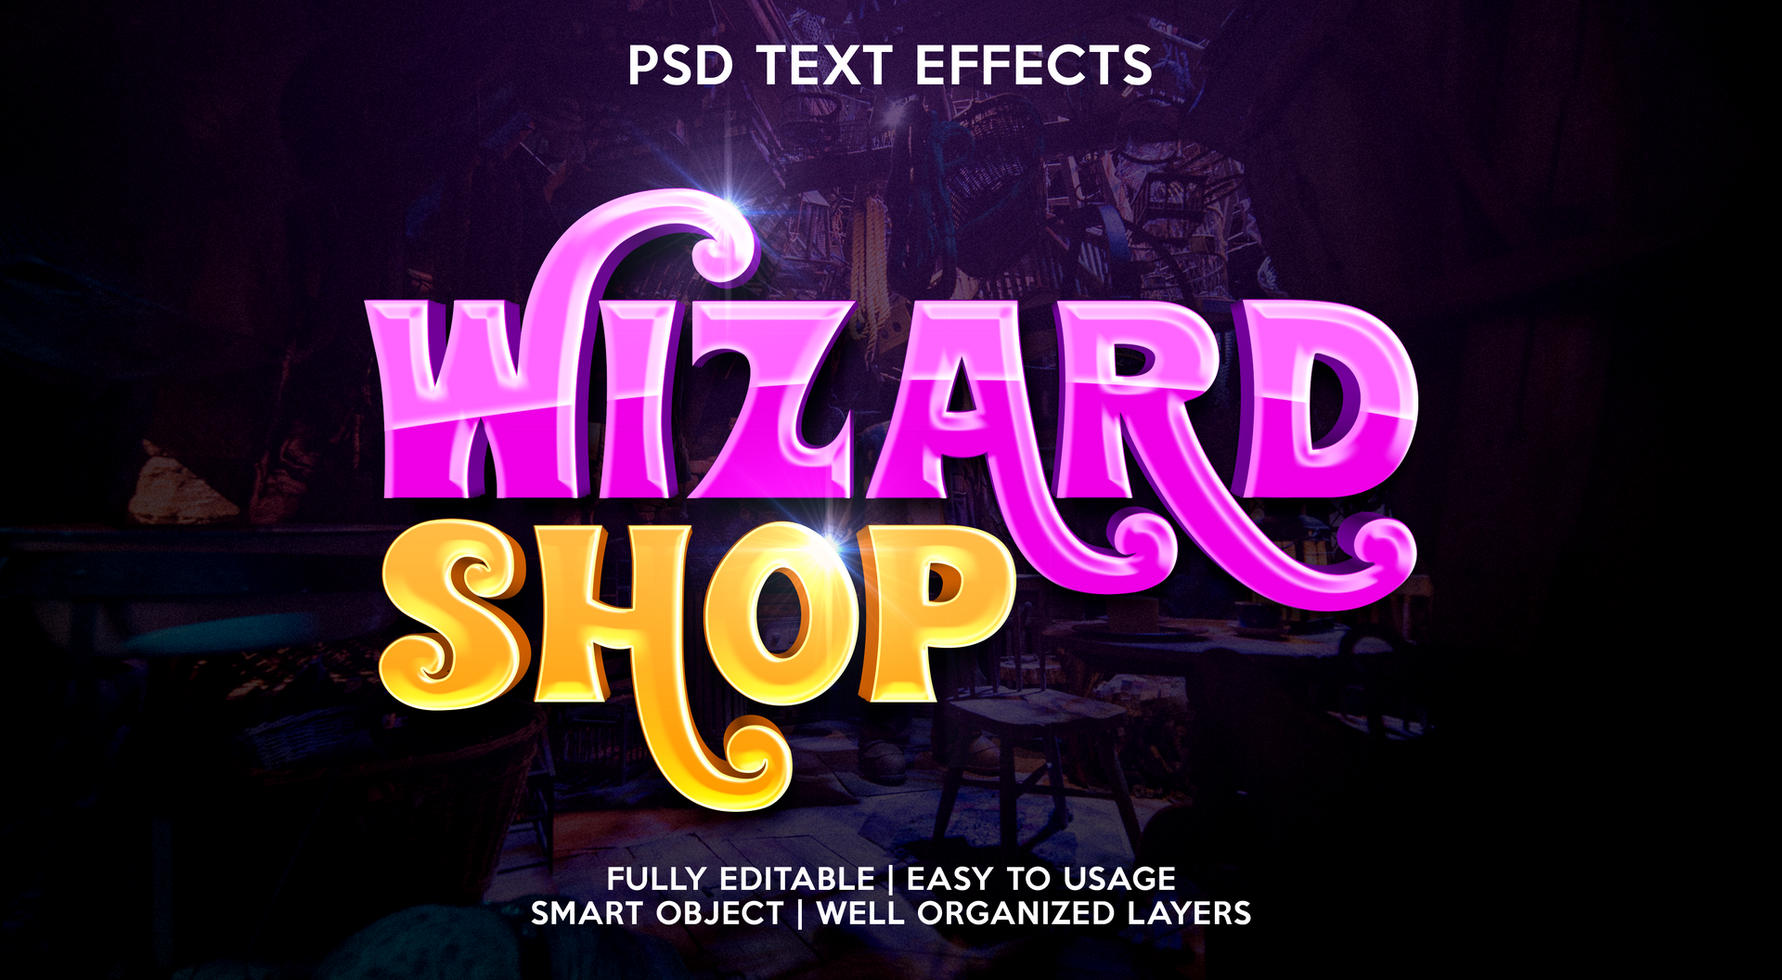 wizard shop text effect template psd